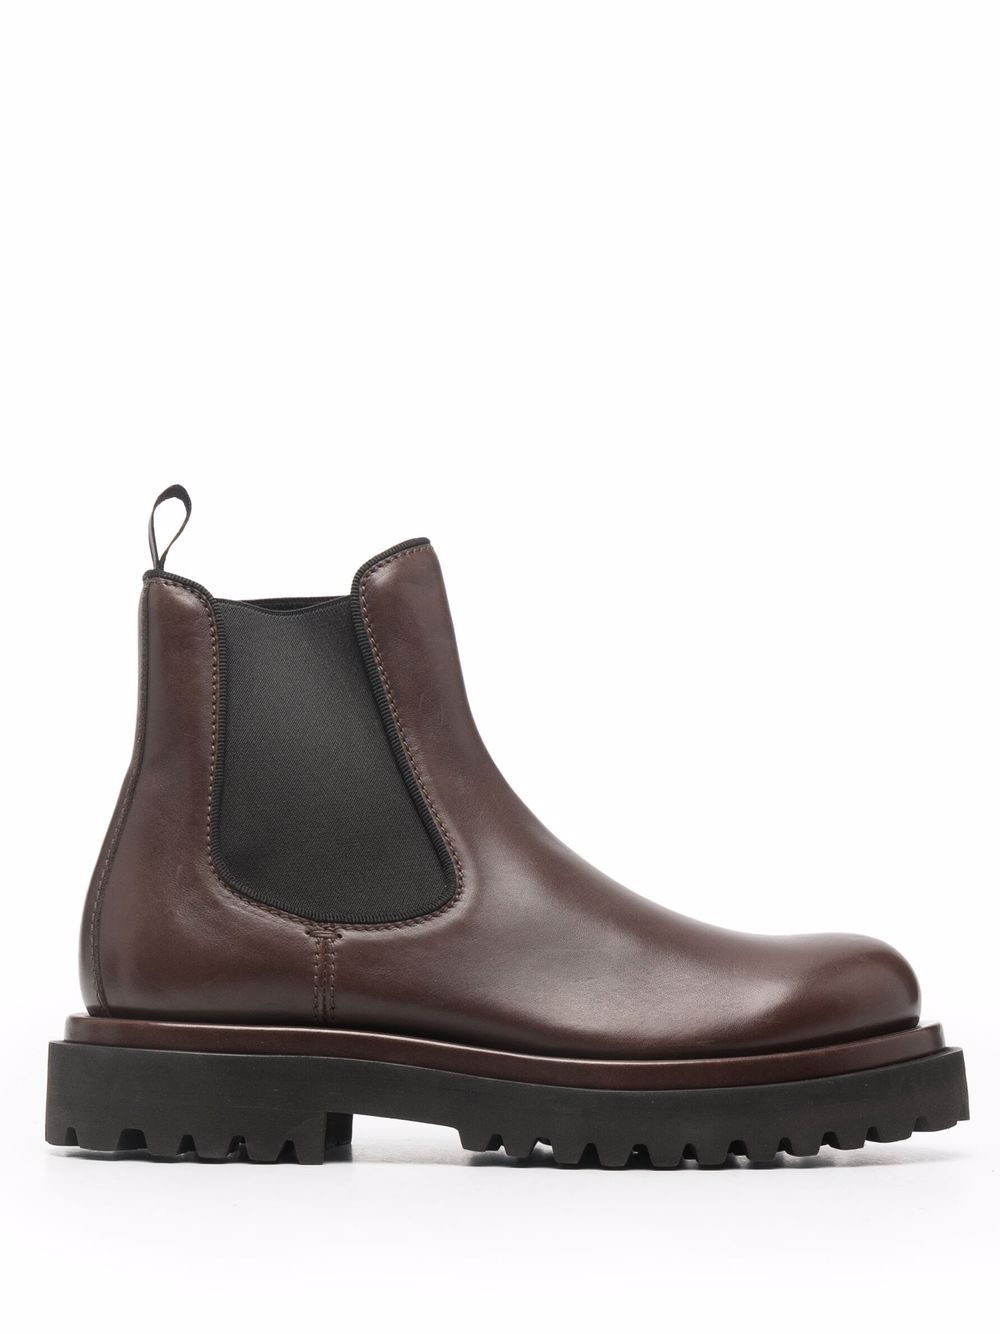 Officine Creative Wisal 006 leather boots - Brown von Officine Creative